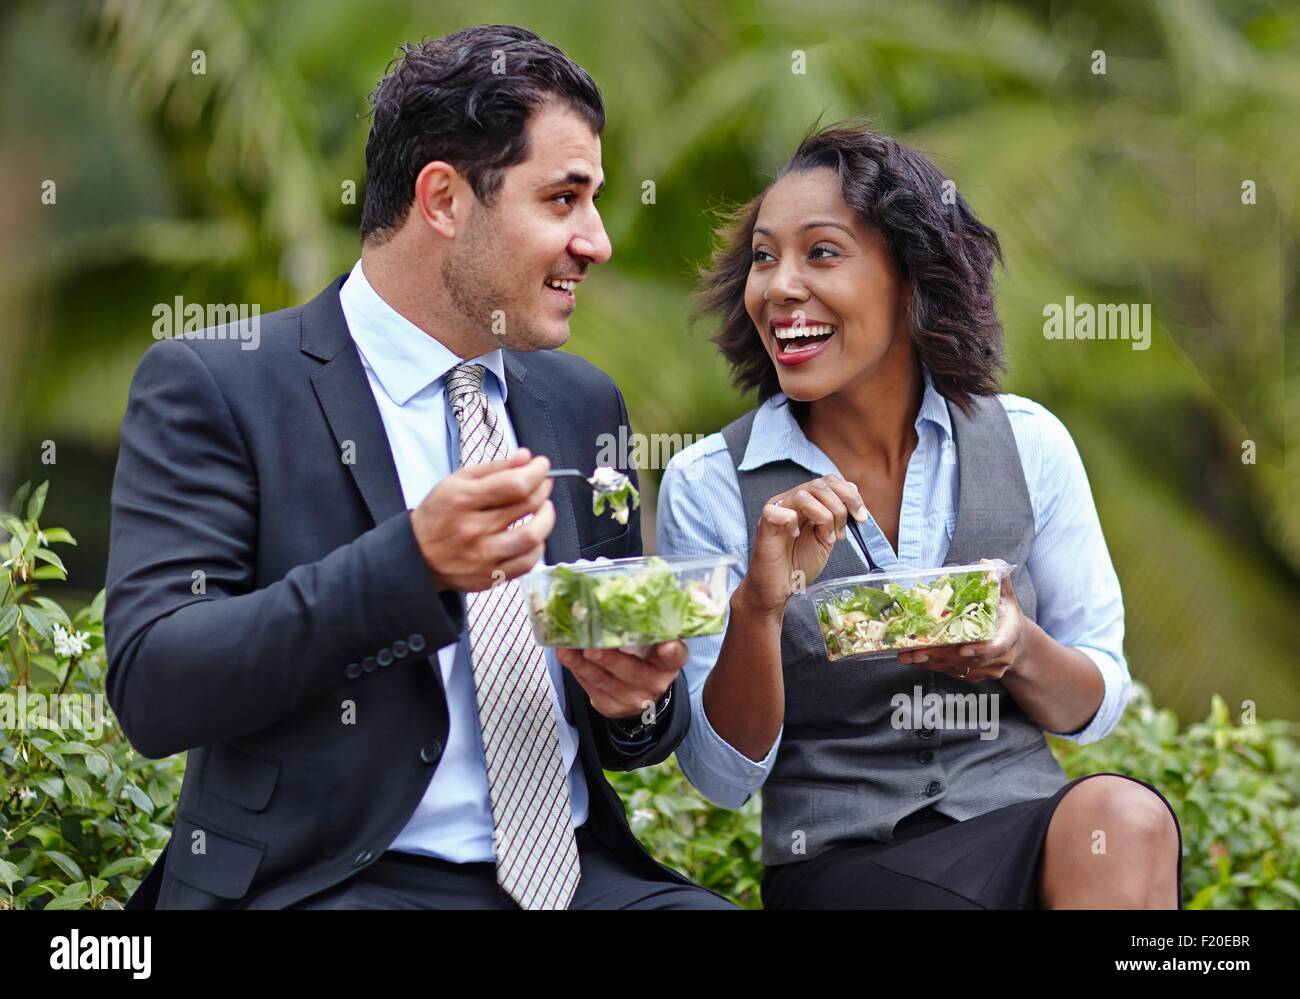 Les gens assis côte à côte, profitant d'une pause déjeuner sur la salade, face à face, smiling Banque D'Images